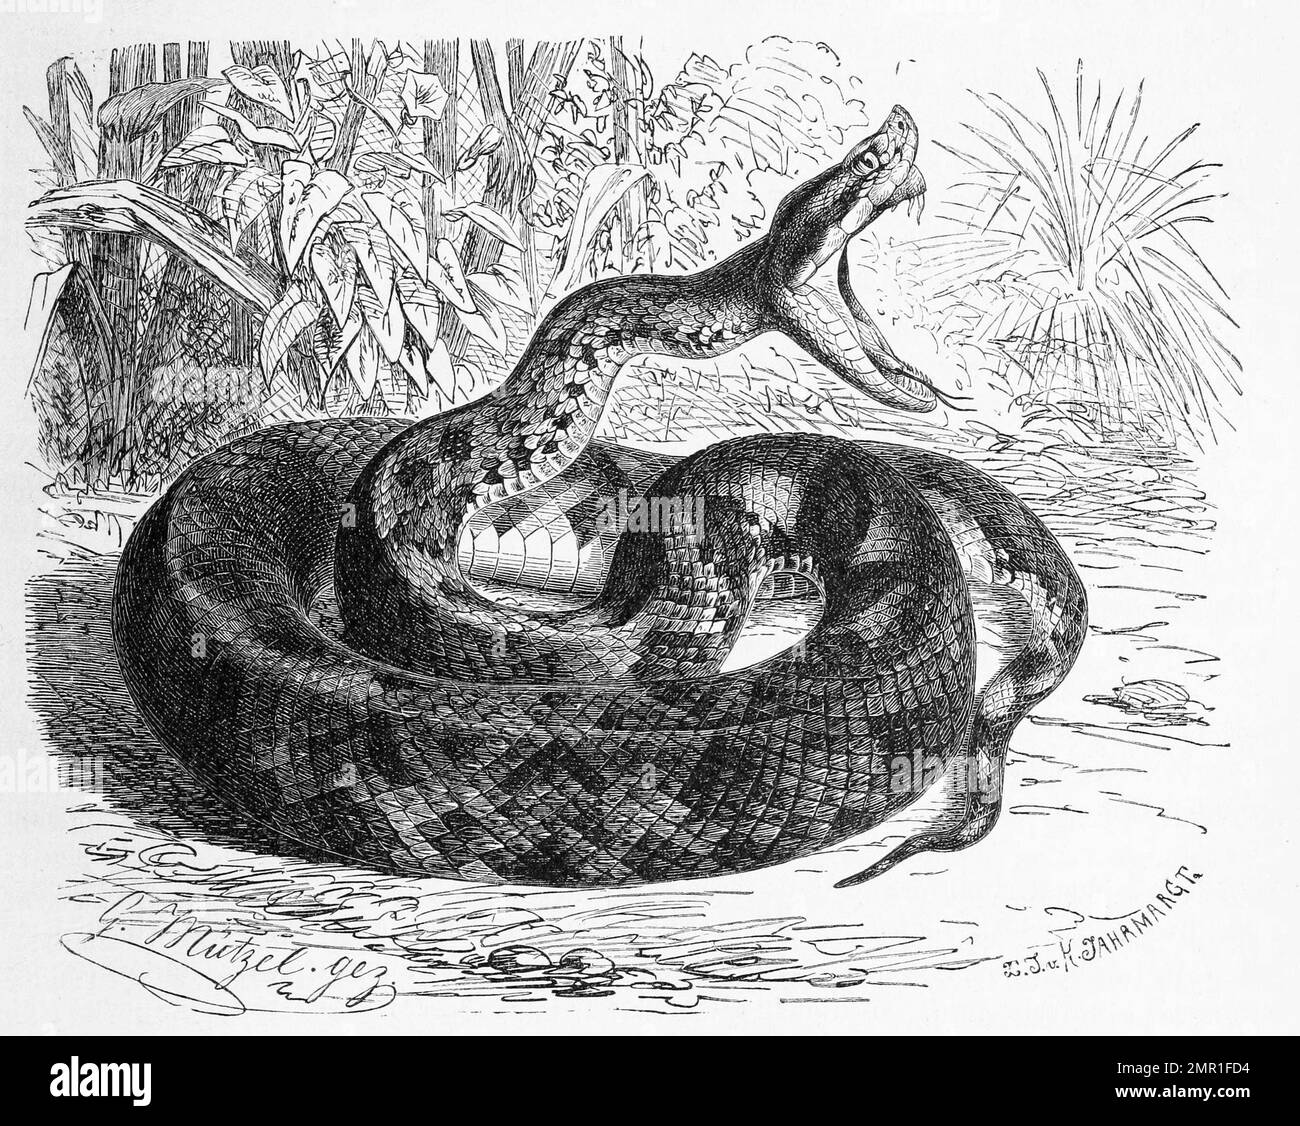 Reptilien, Lanzenschlange, Trimeresurus lanceolatus, Historisch, digital restaurierte Reproduktion von einer Vorlage aus dem 19. Jahrhundert Stock Photo